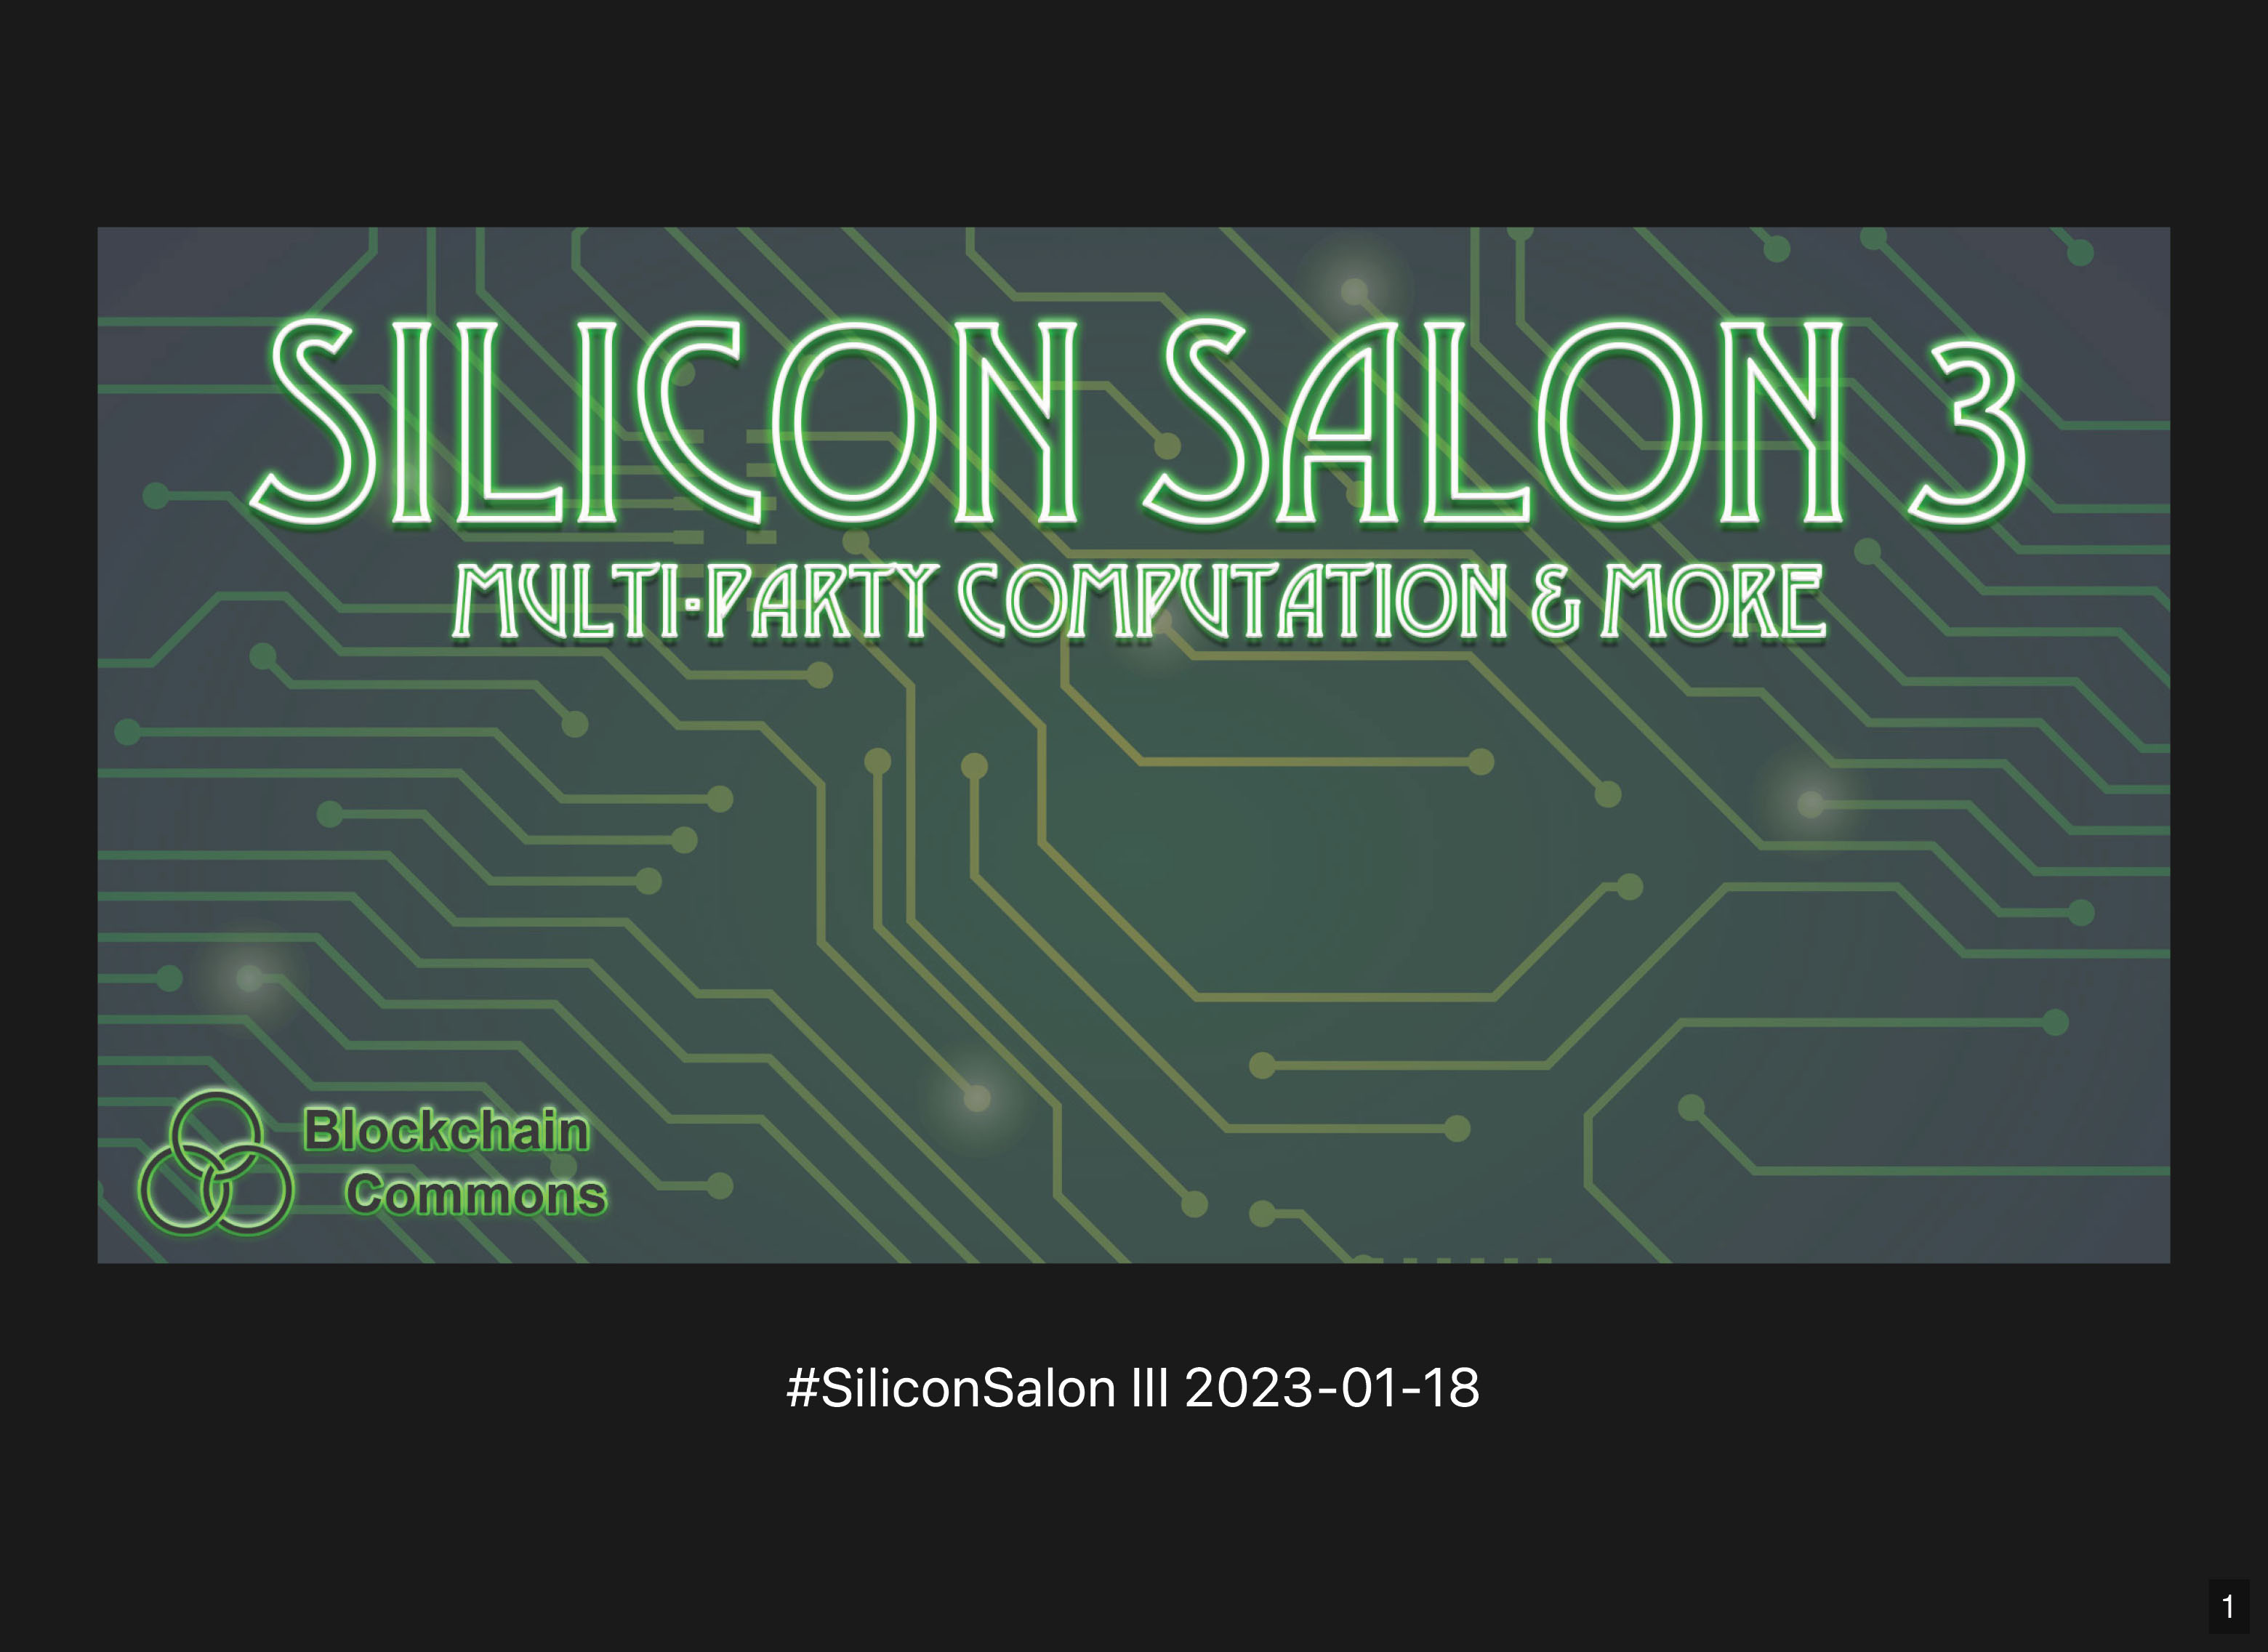 Silicon Salon 3